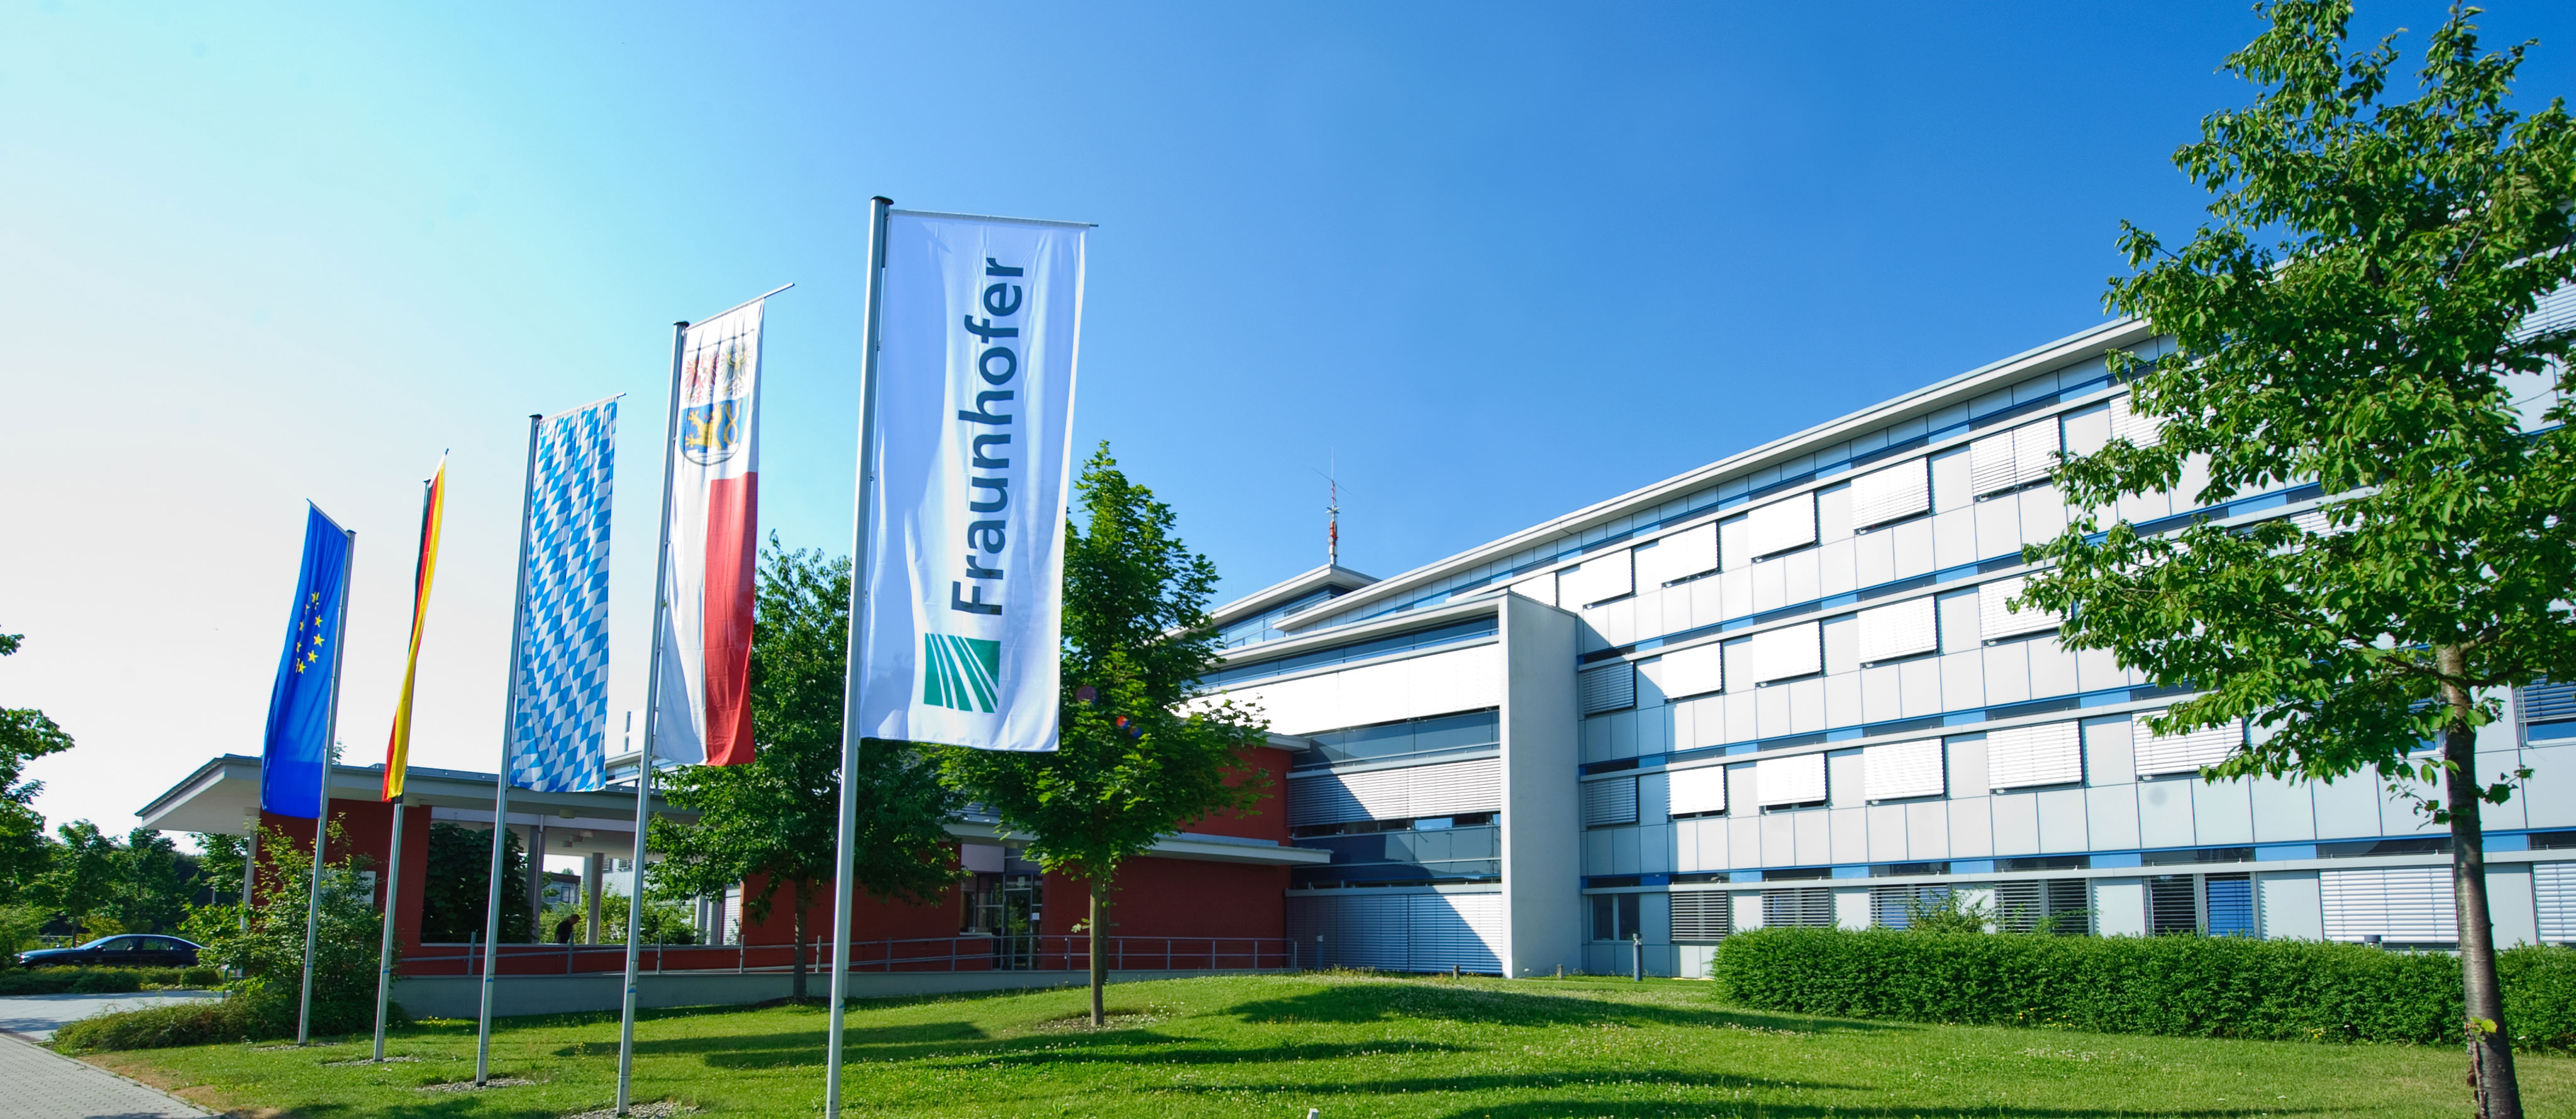 Das Fraunhofer-Institut für Integrierte Schaltungen in Erlangen, Fraunhofer IIS